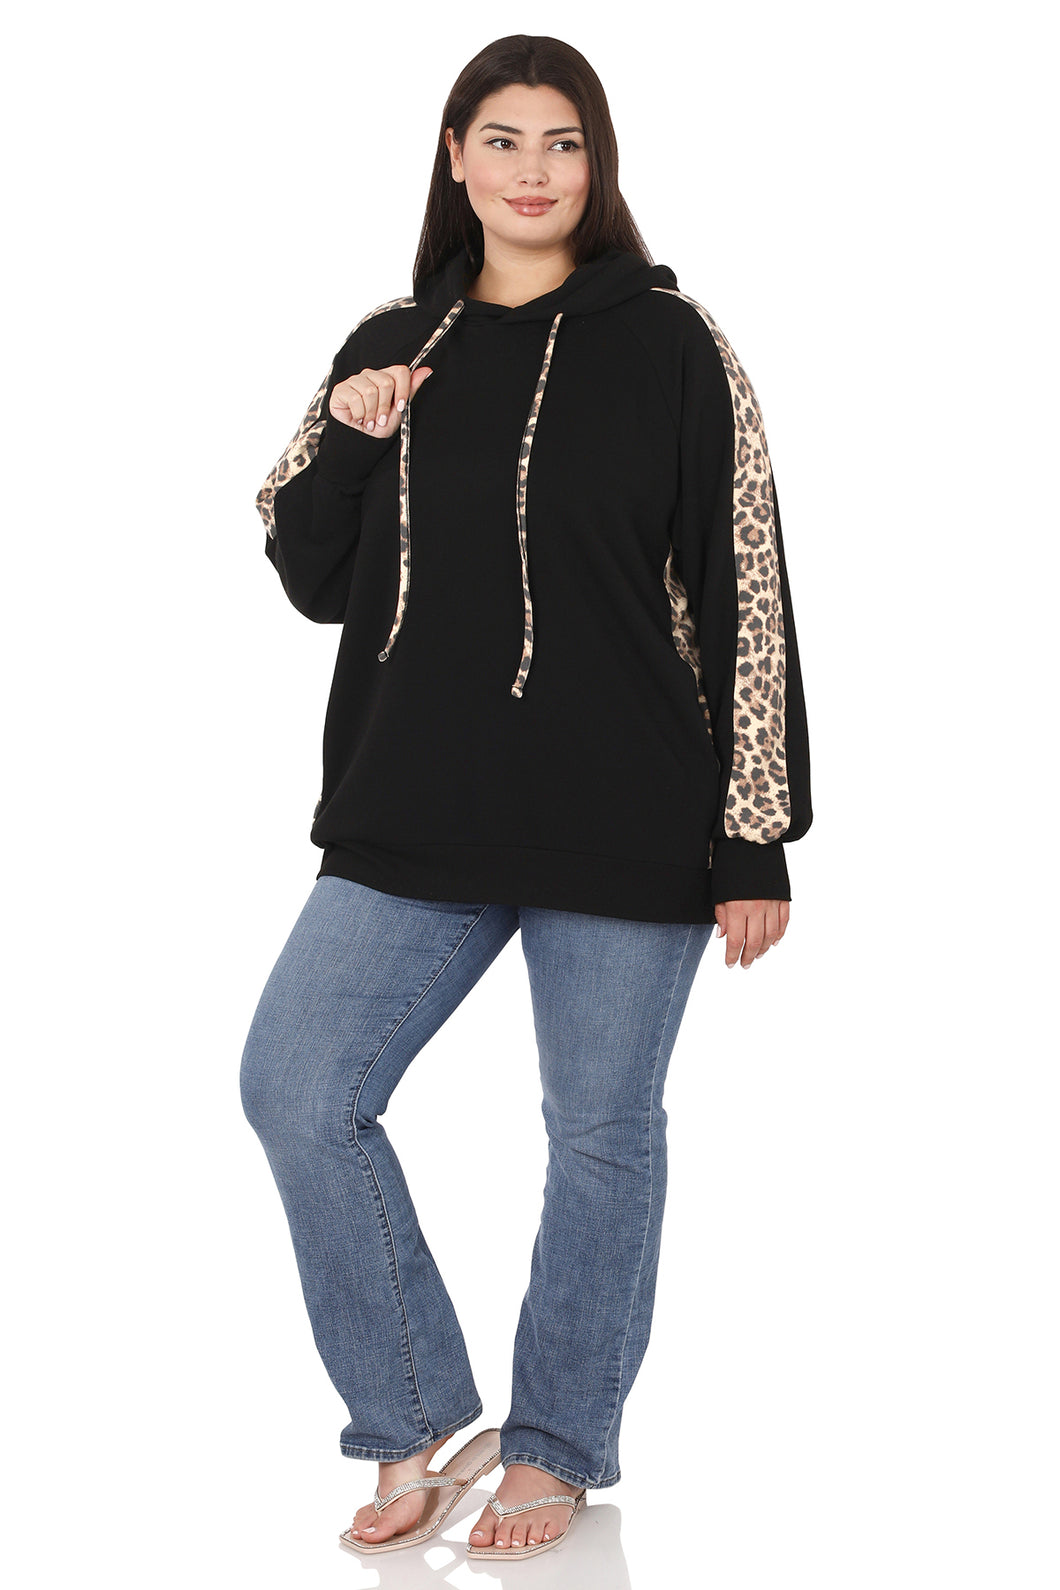 Long Sleeve Leopard Sweatshirt Black Size 3X